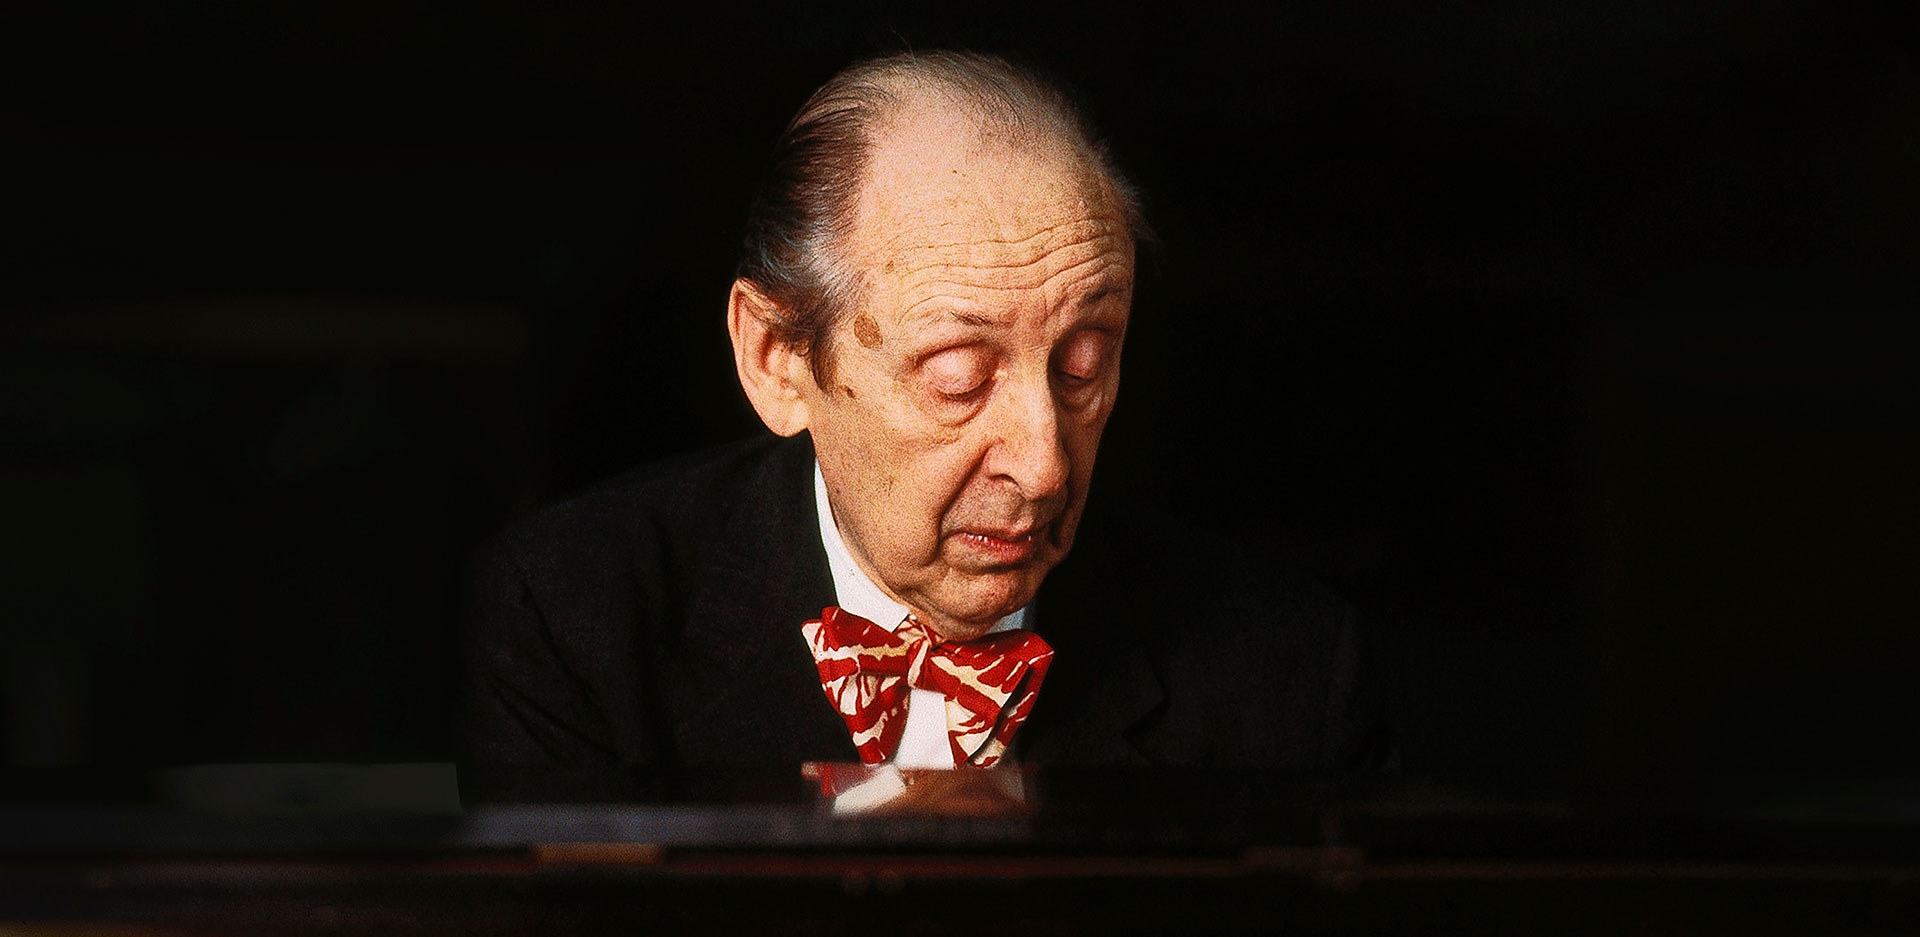 Horowitz, the Last Romantic Pianist